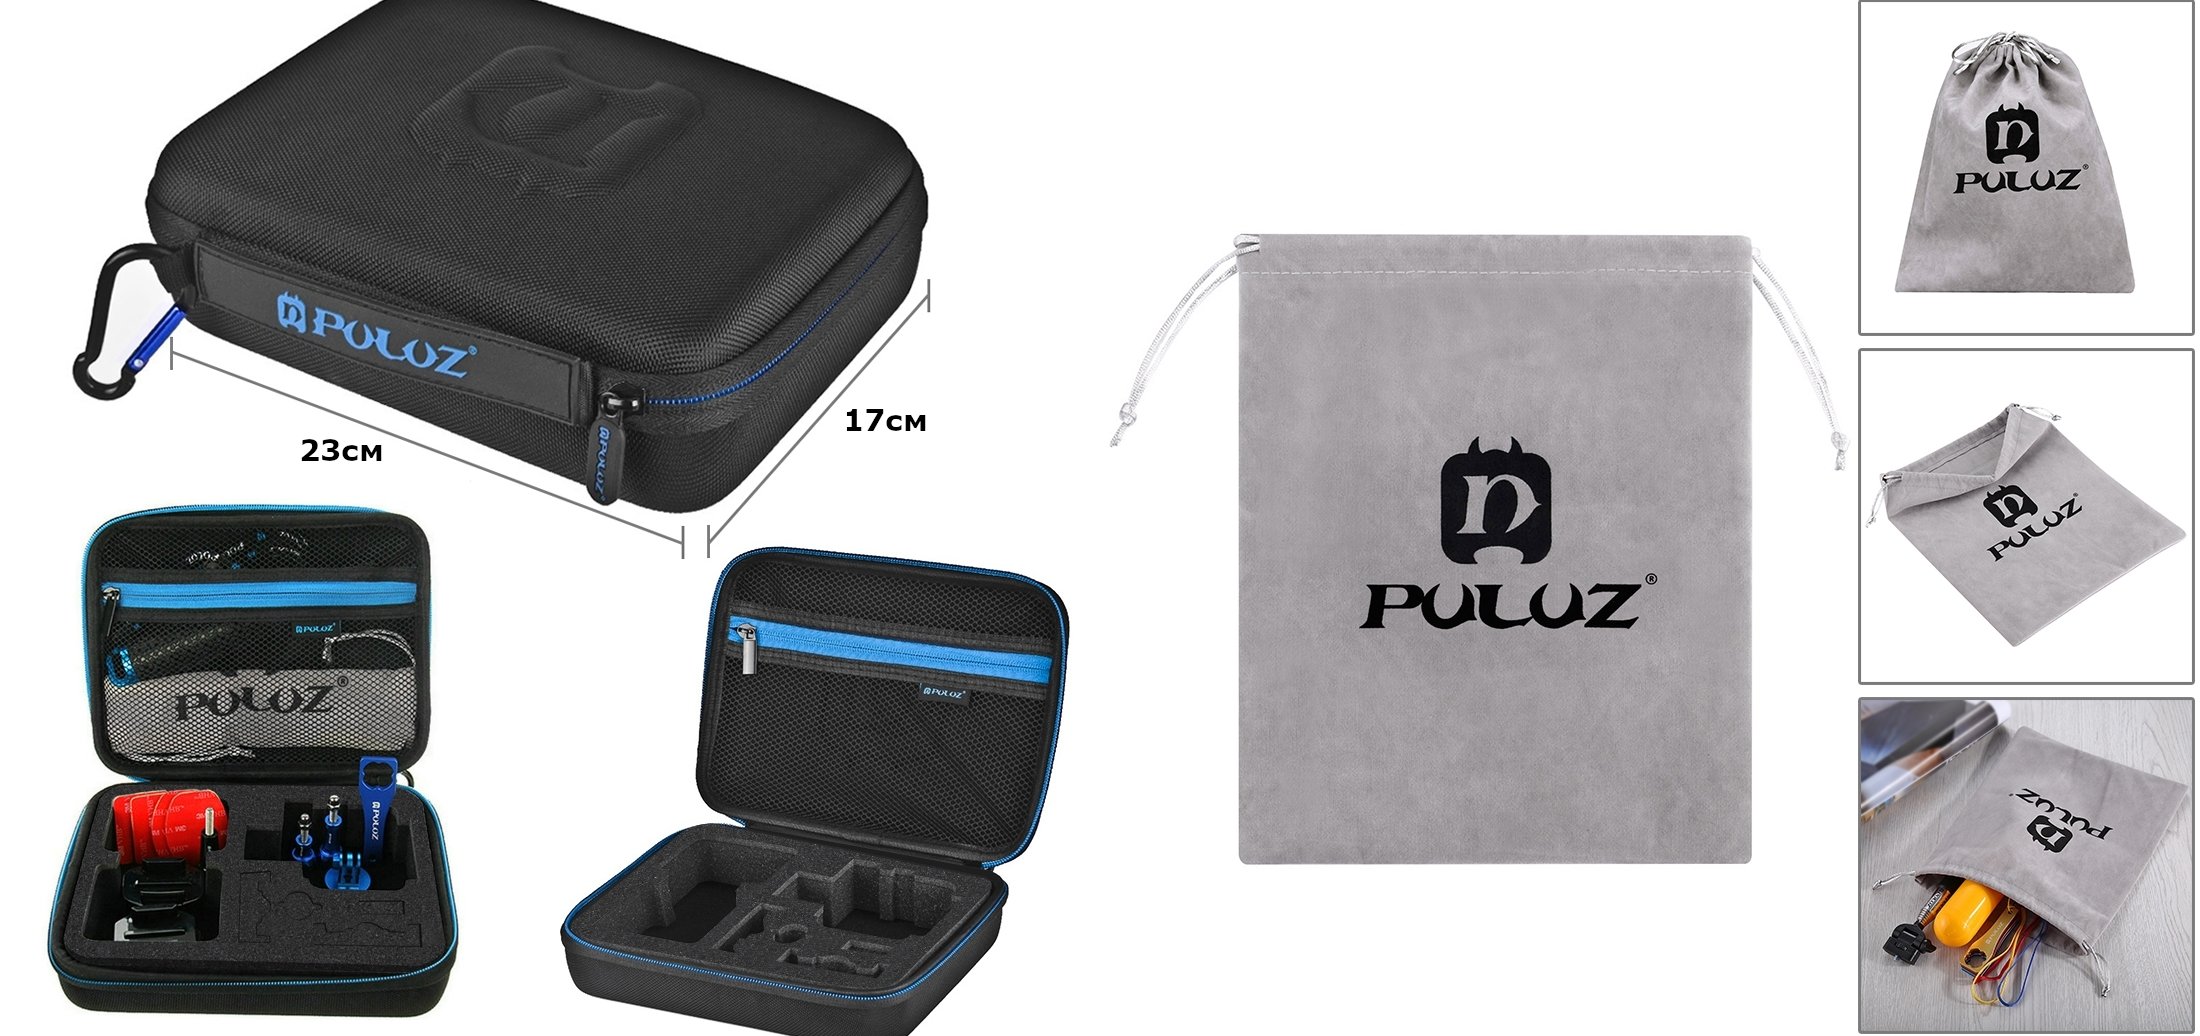 фотография кейса для хранения экшн-камеры Puluz PKT15